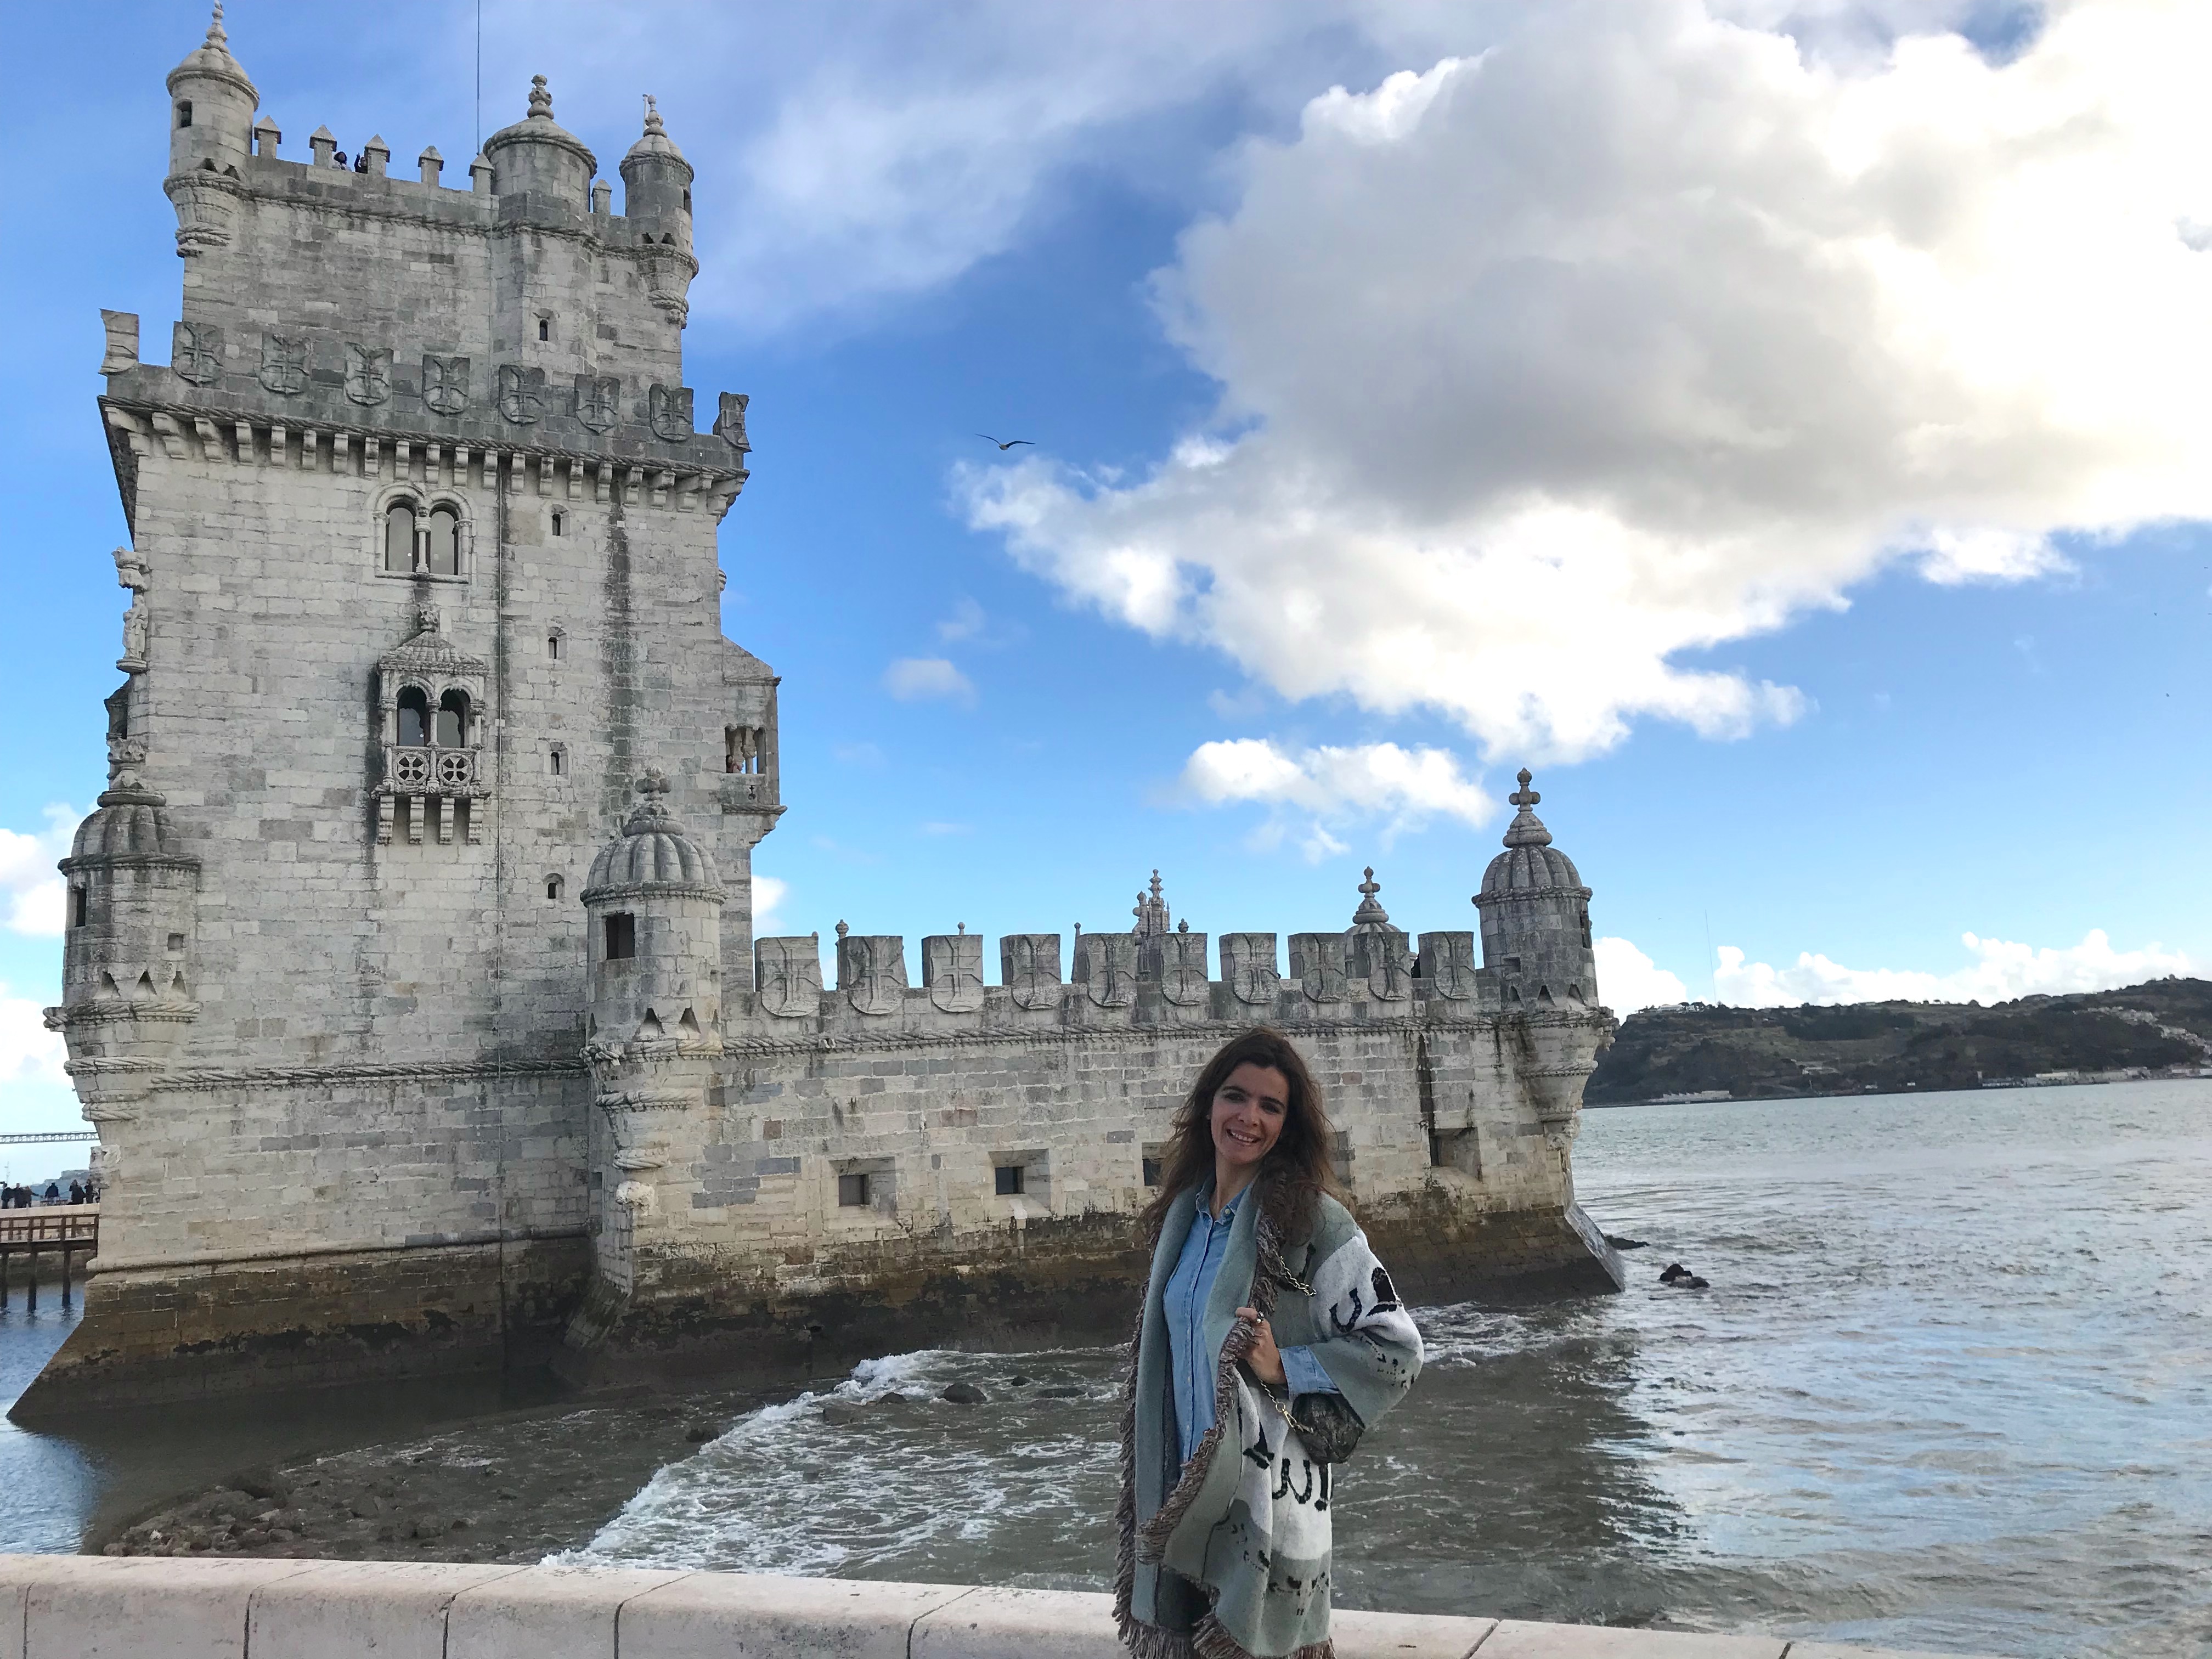 Torre de Belém – Maravilha(s) de Portugal